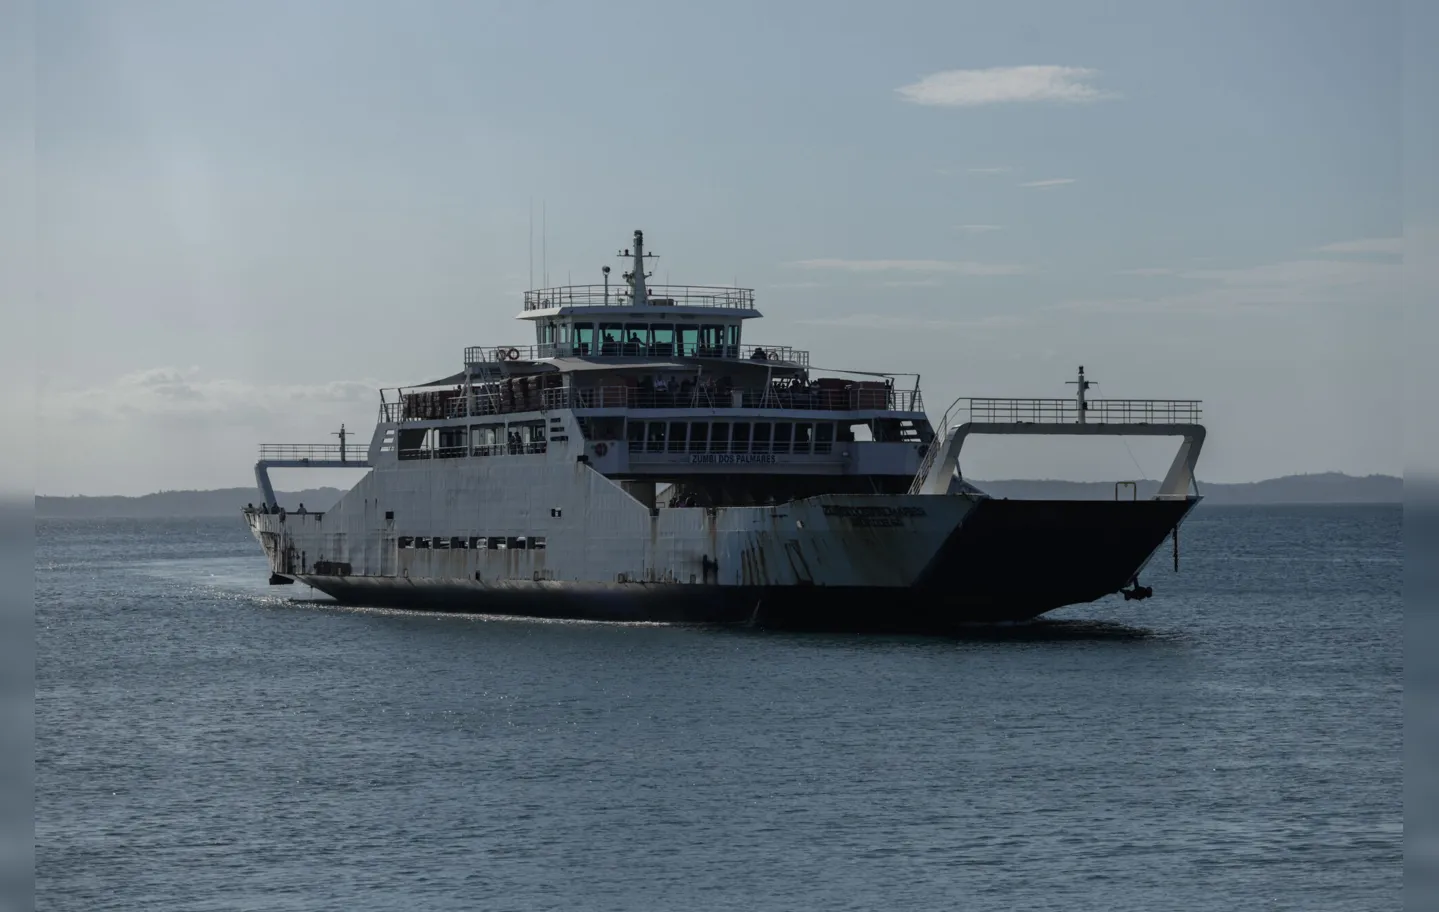 Ferry-Boat em operação neste mês de abril